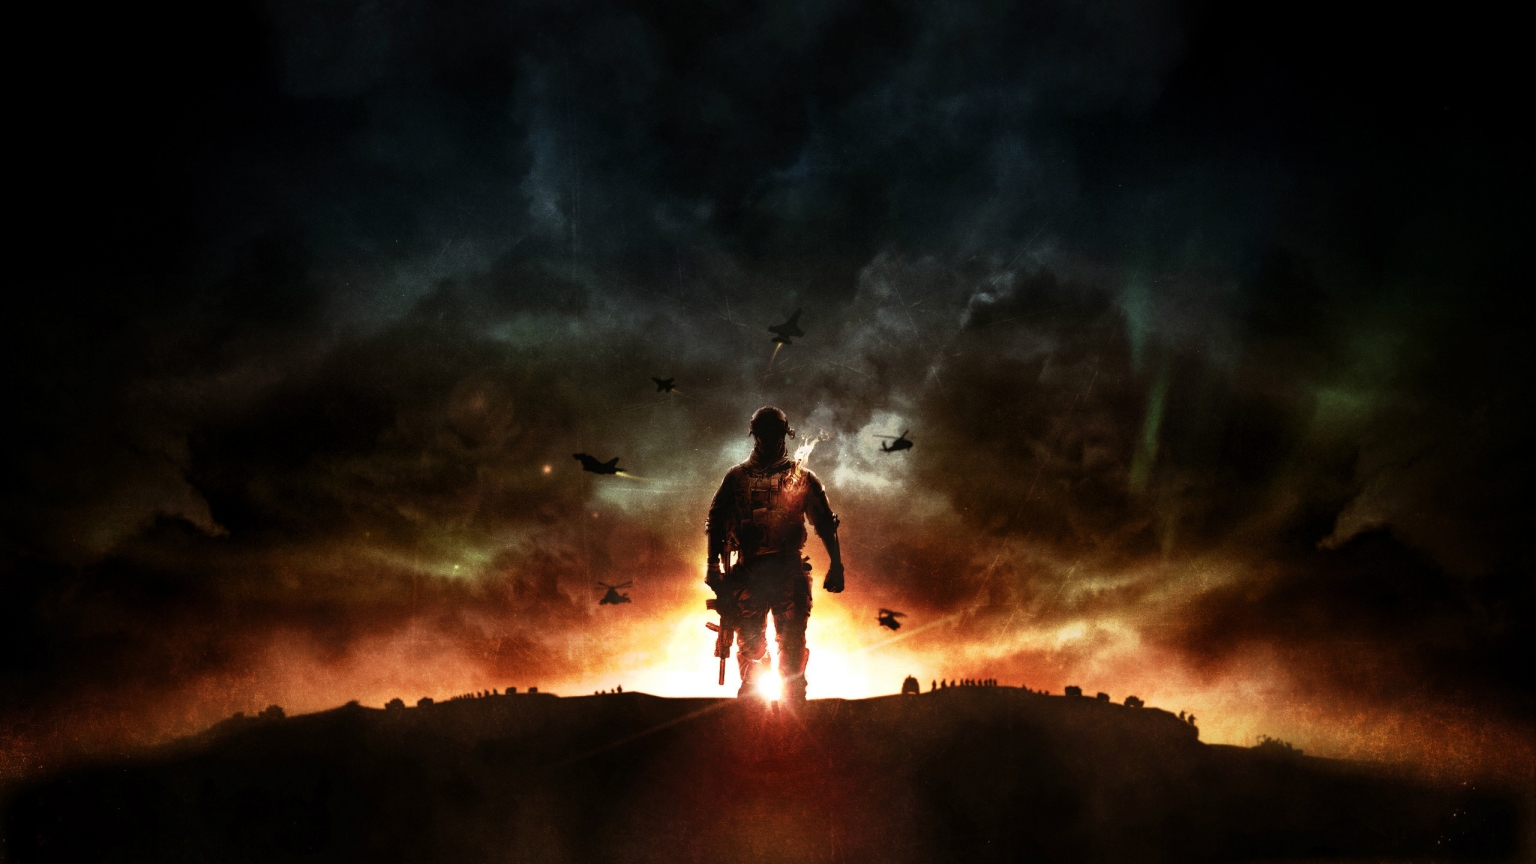 Battlefield 4 Sunset War for 1536 x 864 HDTV resolution